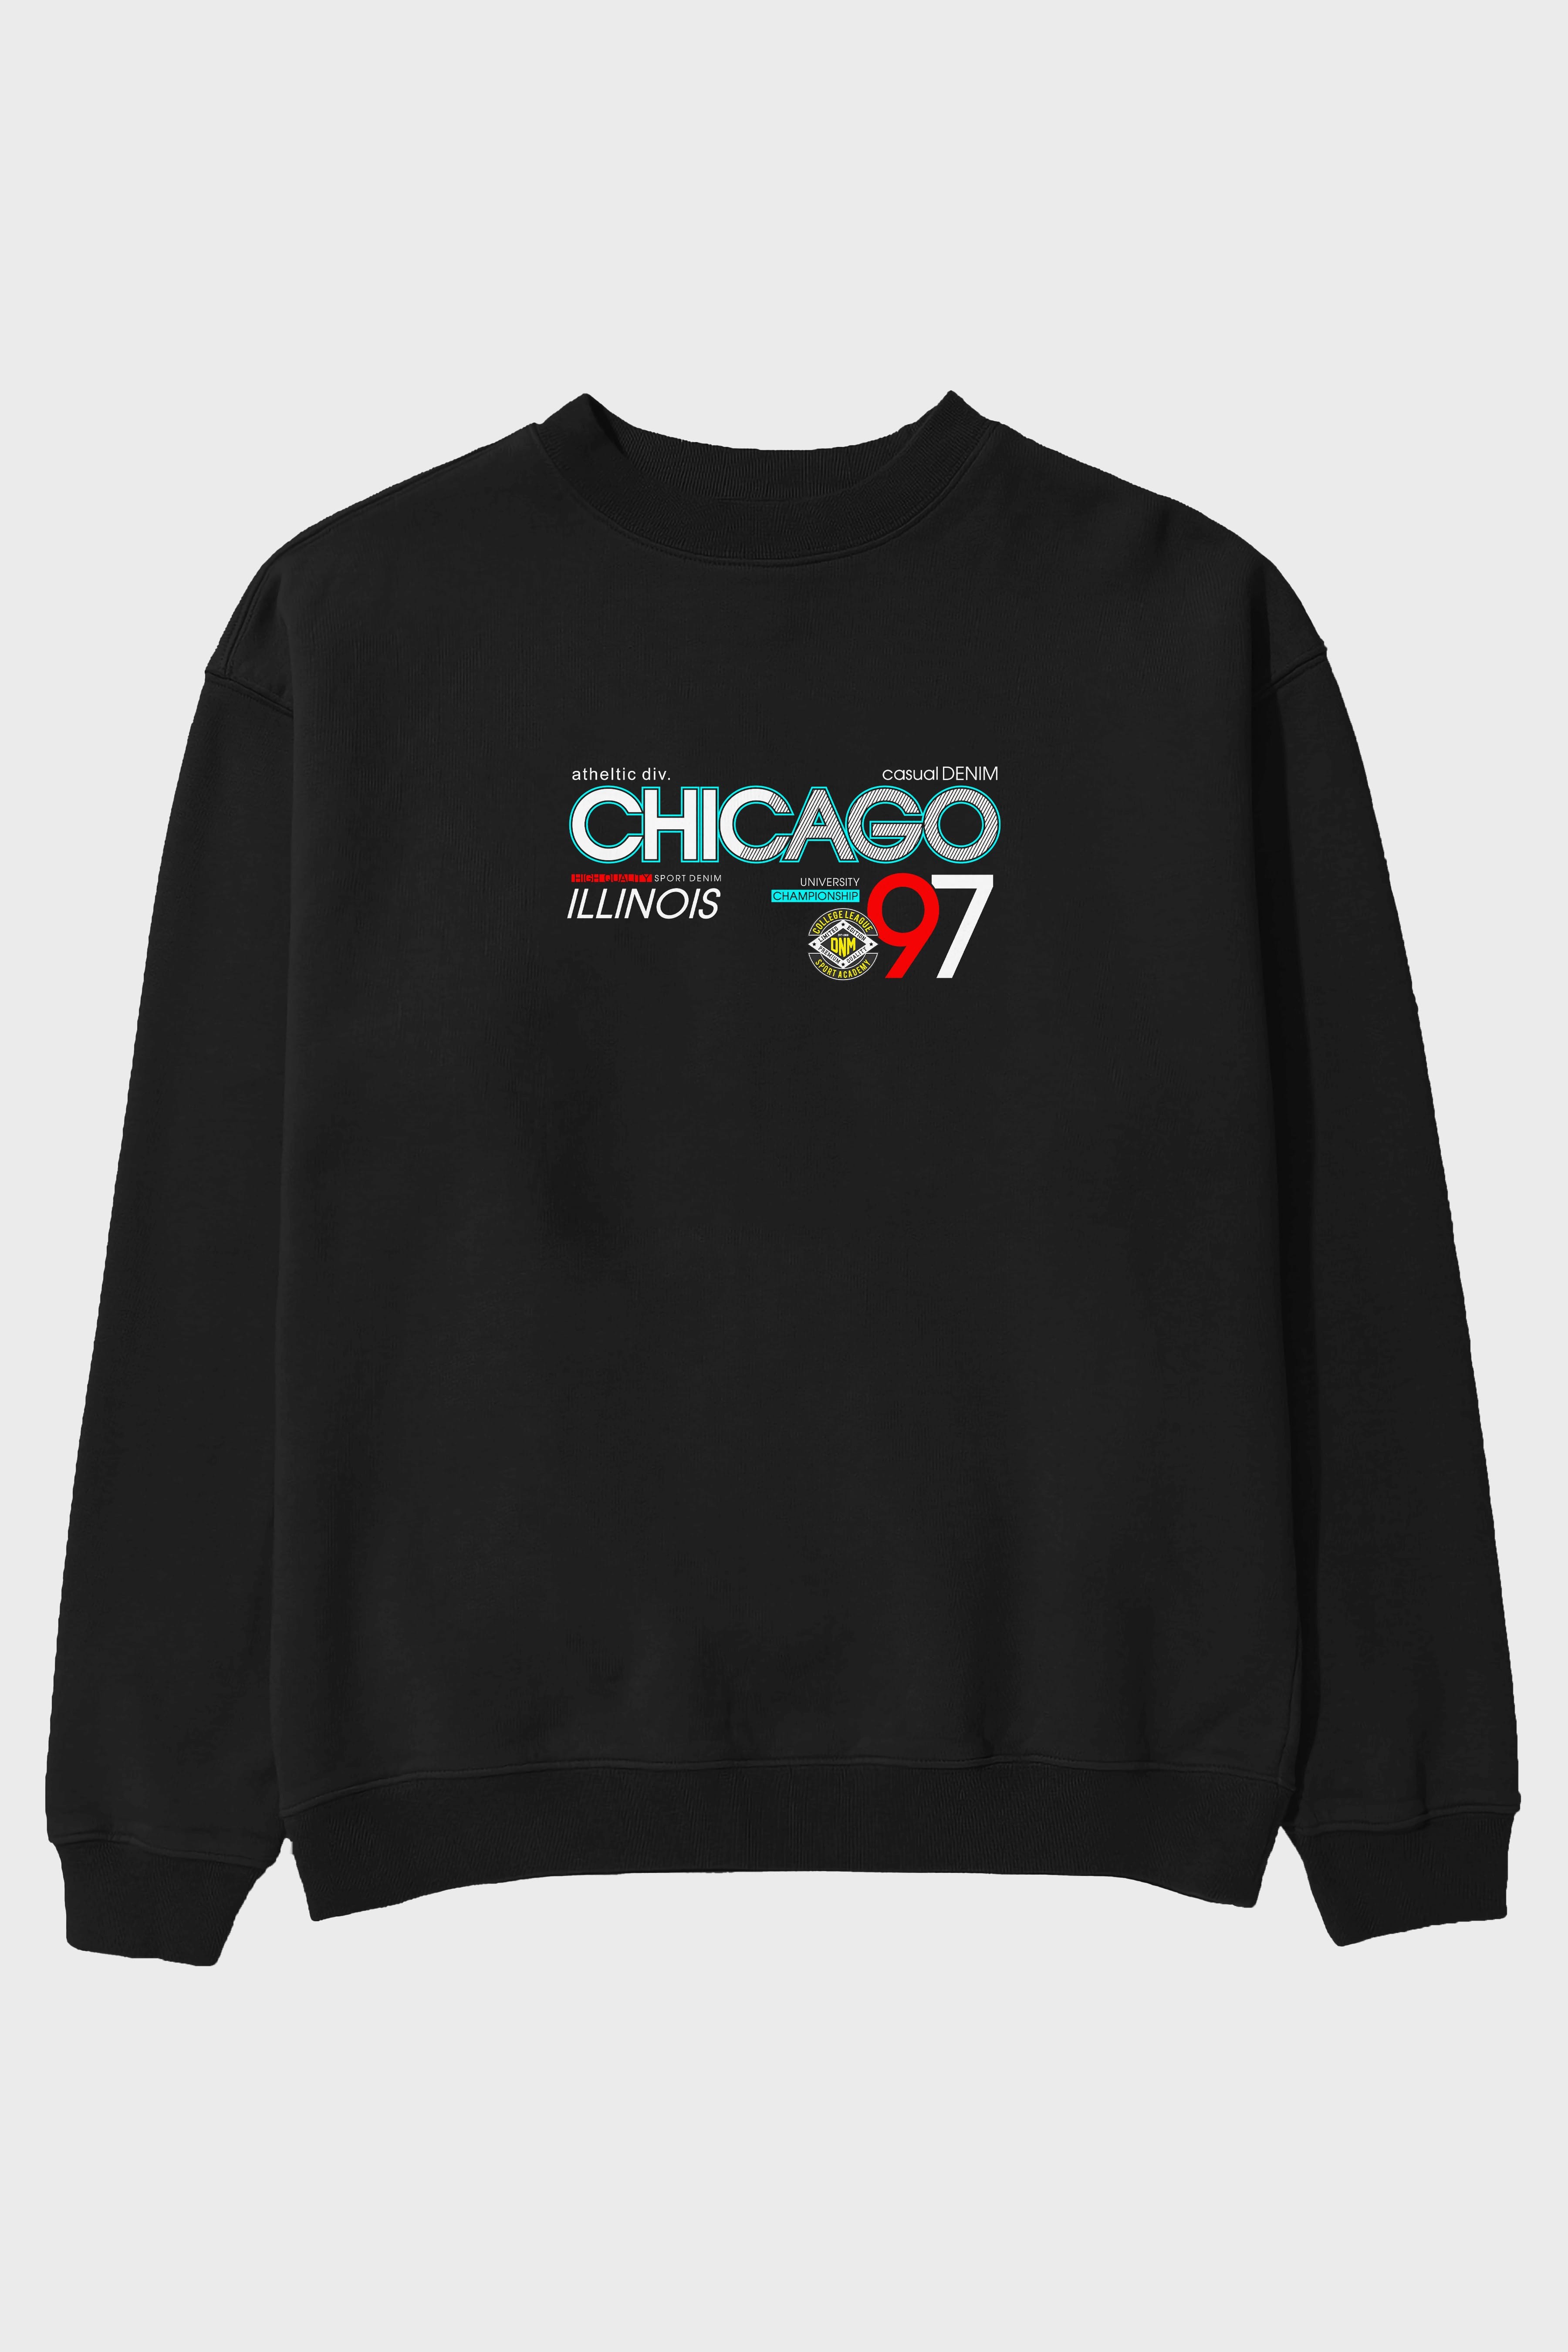 Chicago 97 Ön Baskılı Oversize Sweatshirt Erkek Kadın Unisex